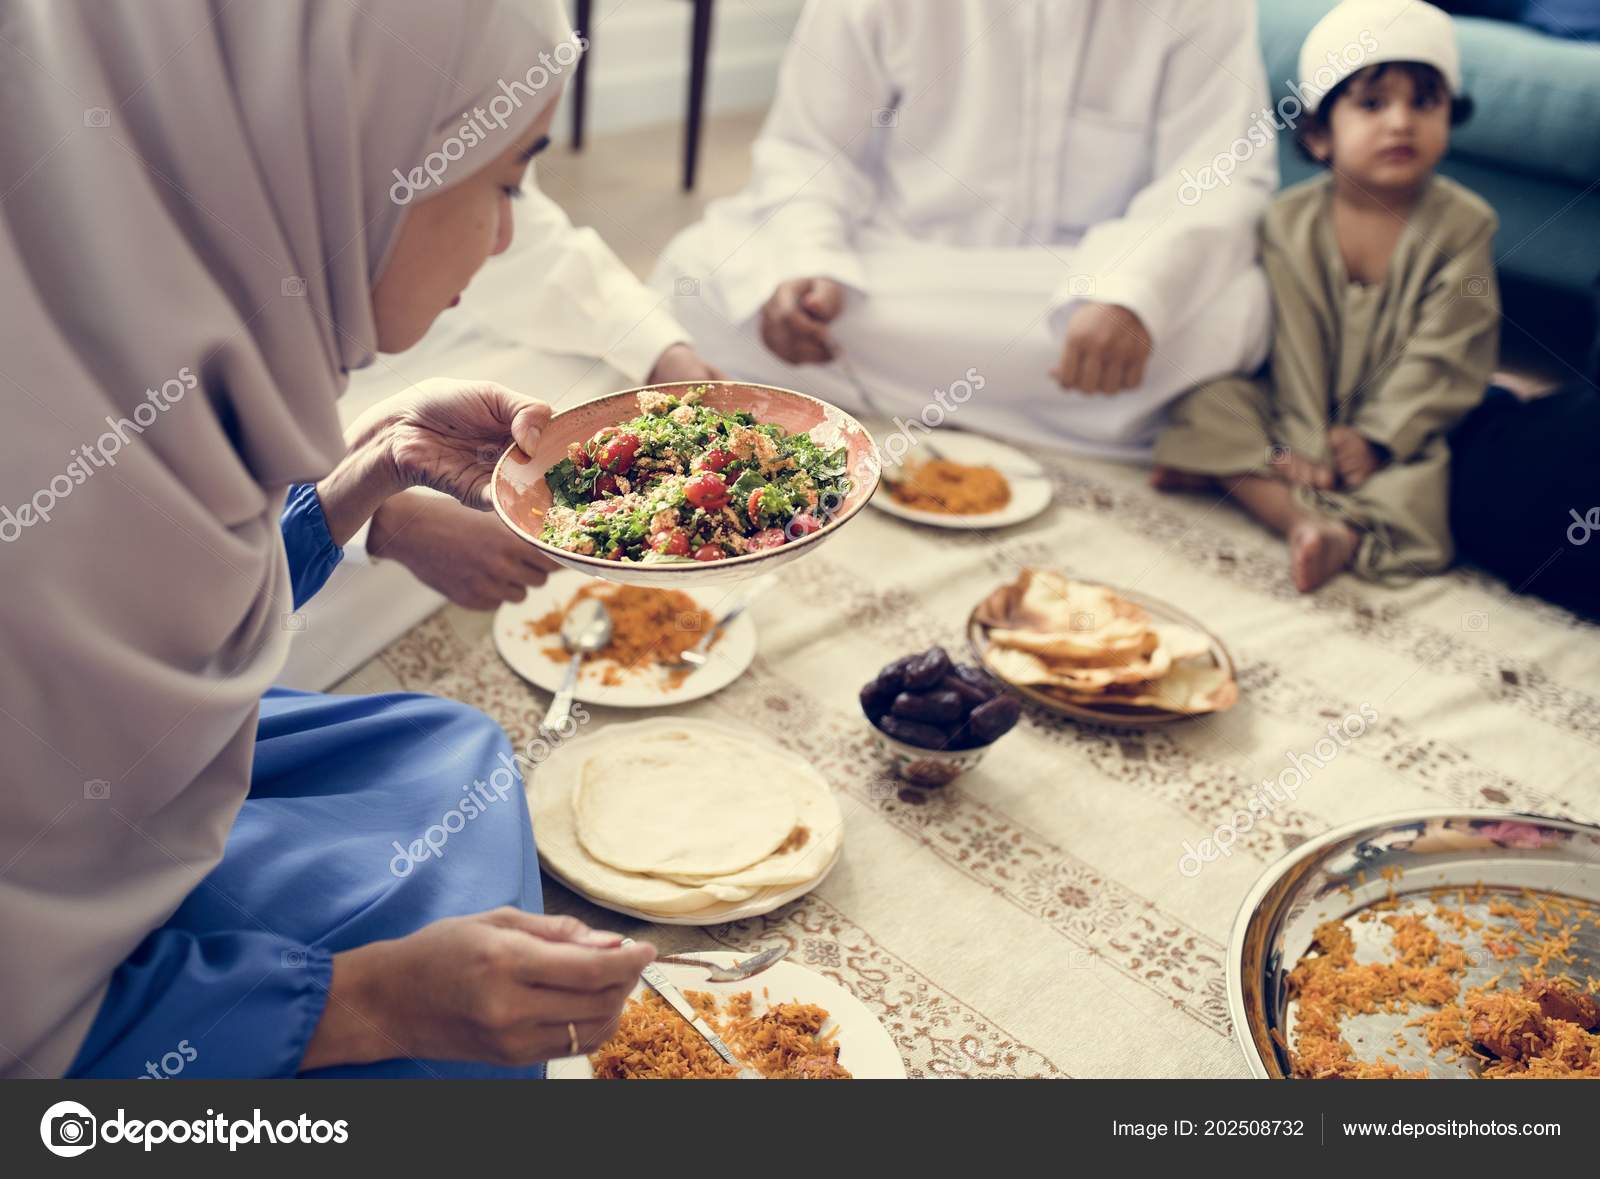 Рамадан мясо едят ли